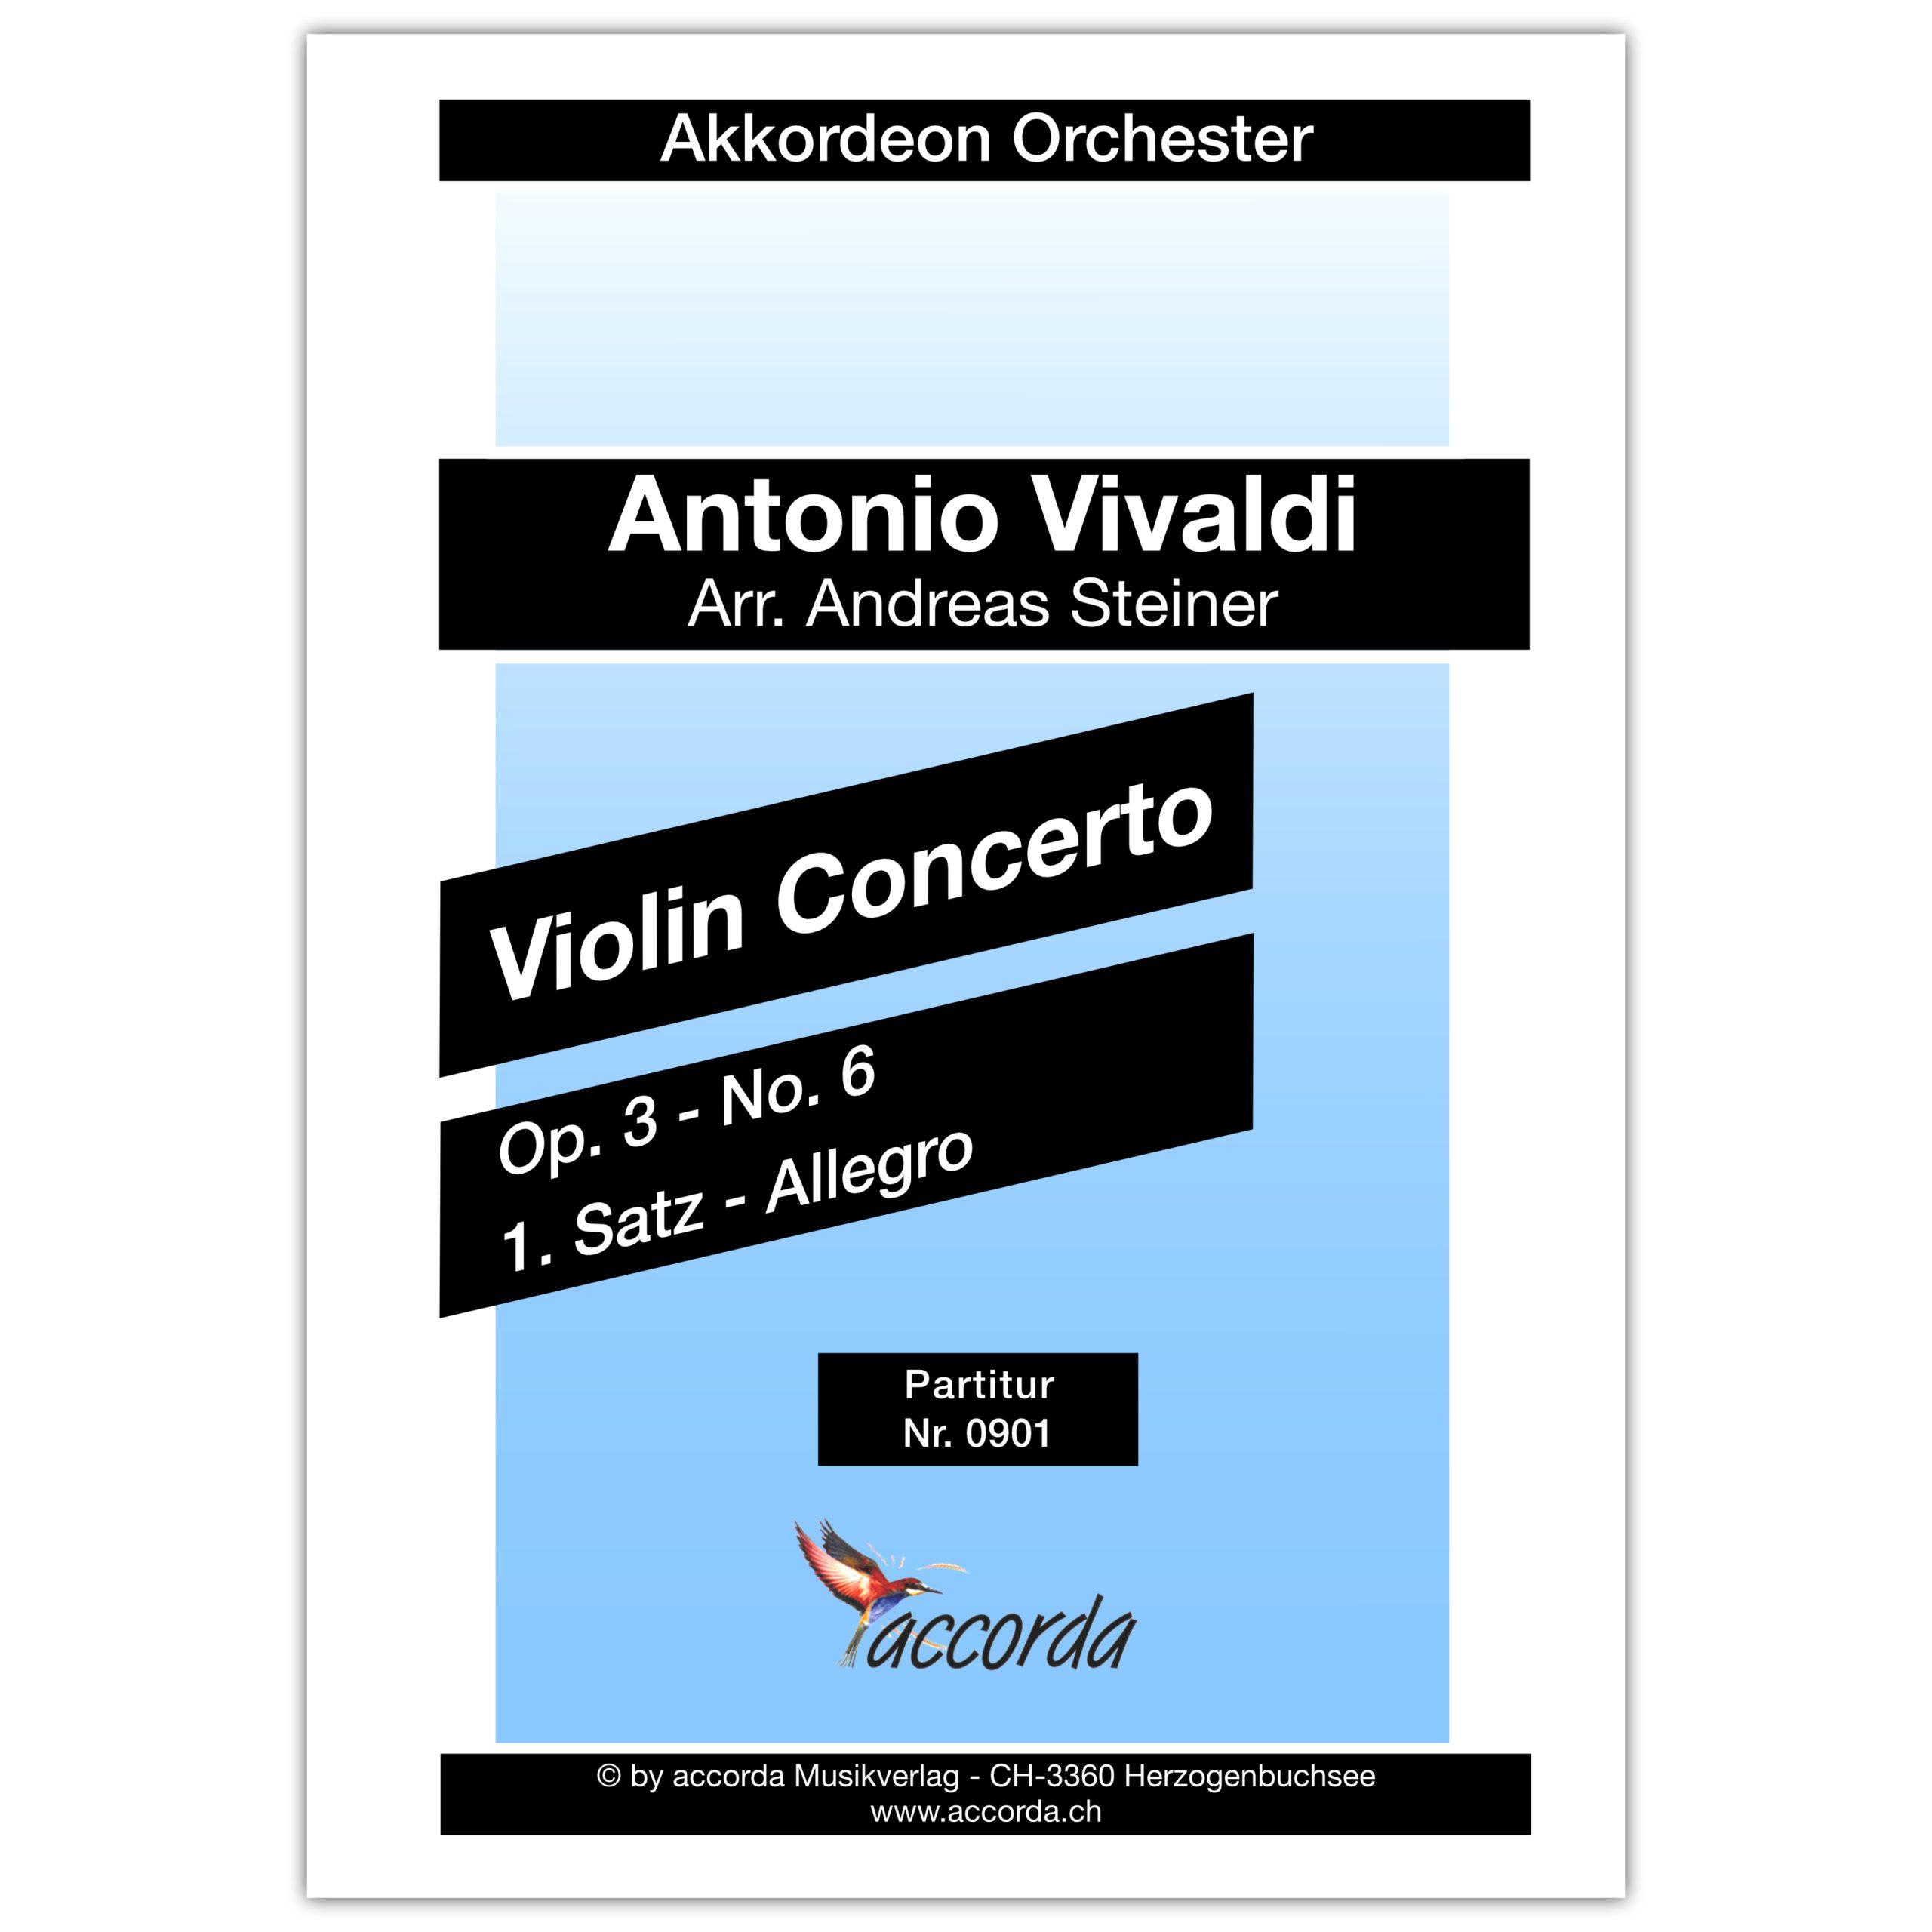 Violinconcerto Op.3 No. 6 - 1. Satz - Allegro